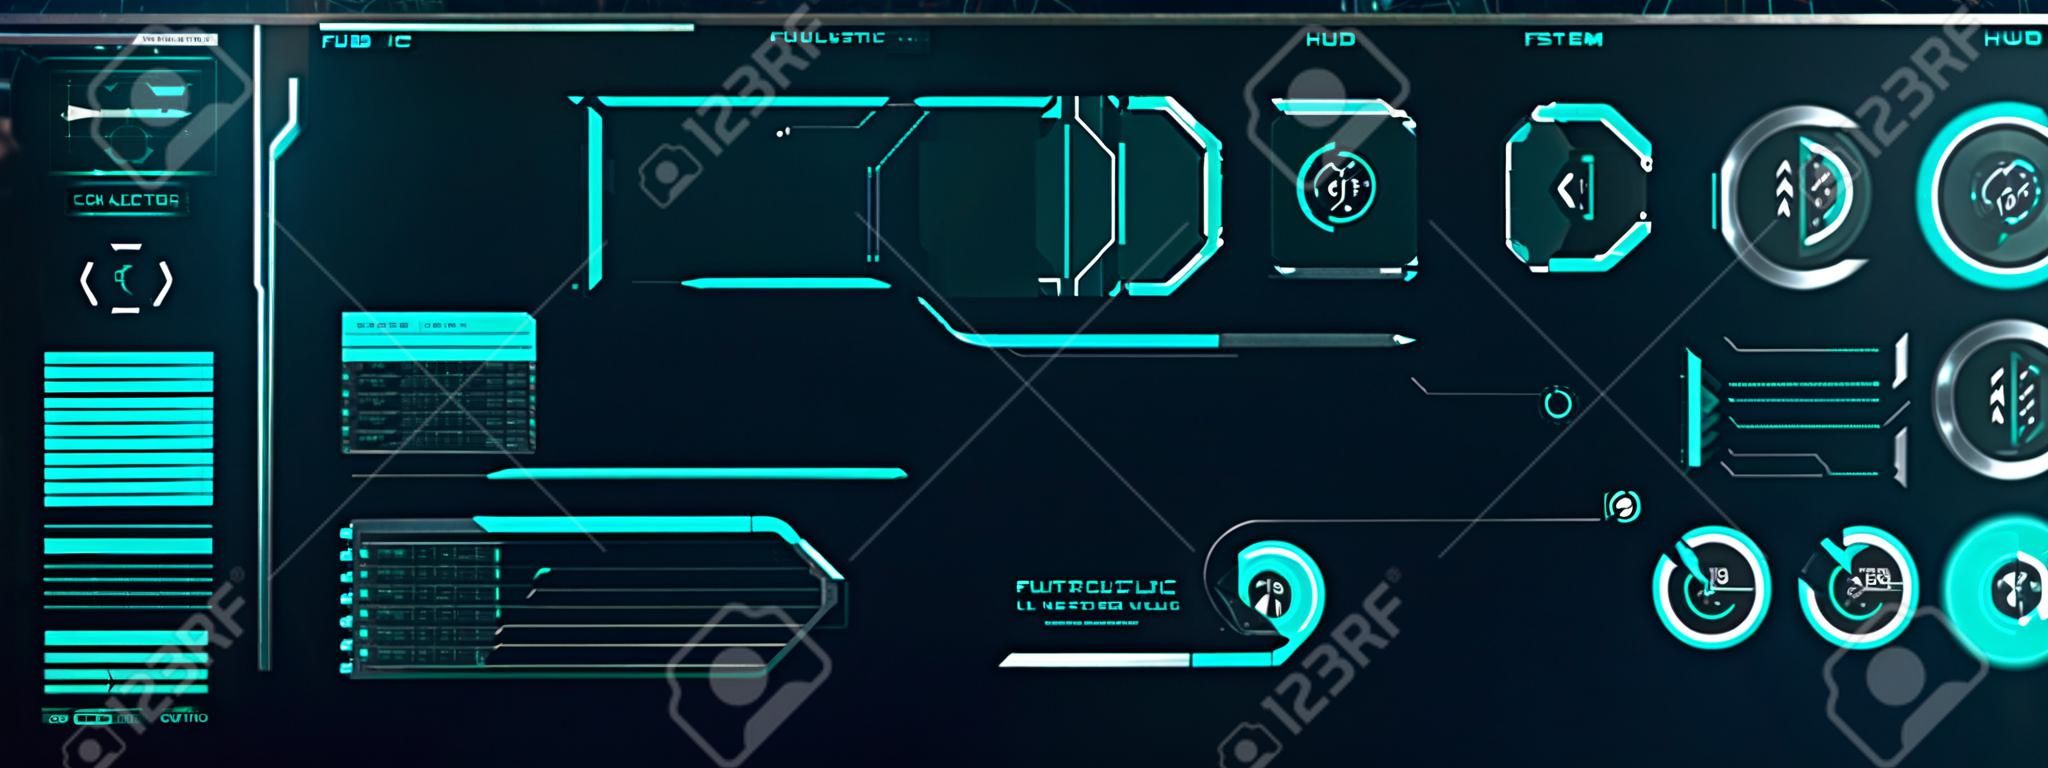 Diseño de pantalla de interfaz futurista Vector HUD. Títulos de llamadas digitales. Conjunto de elementos de pantalla de interfaz de usuario futurista HUD UI GUI. Pantalla de alta tecnología para videojuegos. Diseño de concepto de ciencia ficción.